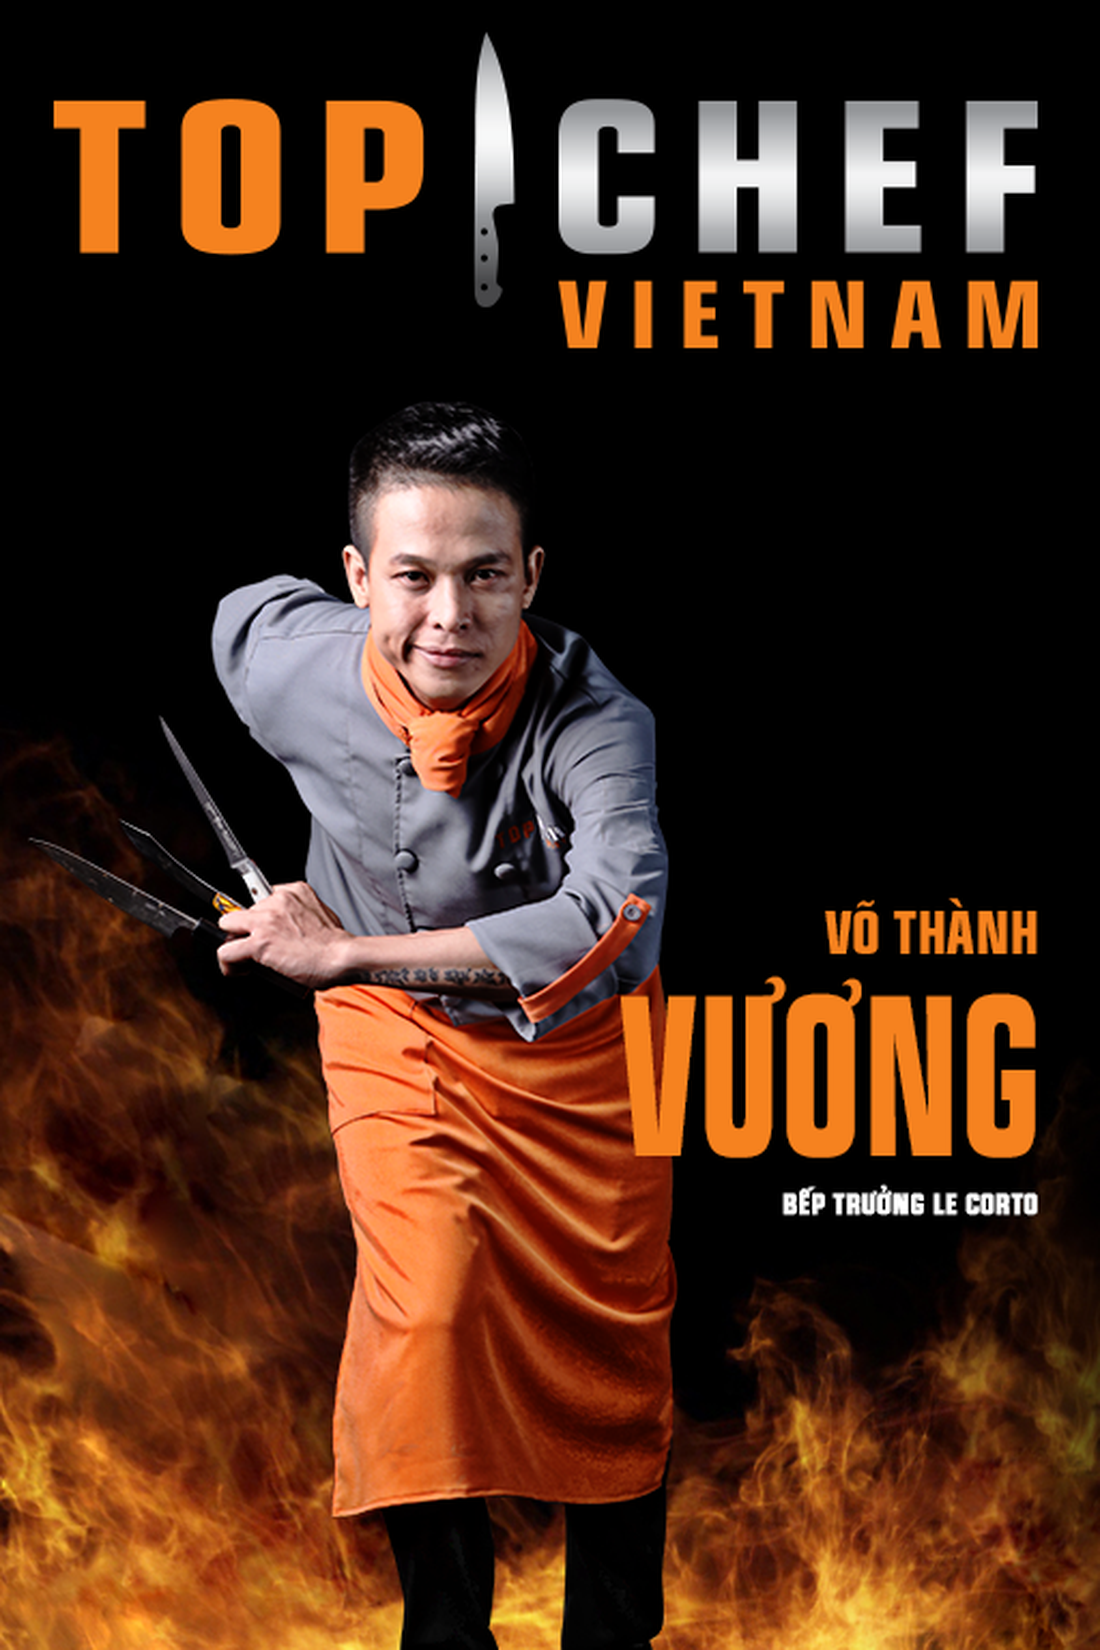 Lộ diện top 14 Đầu bếp thượng đỉnh - Top chef Vietnam 2019 - Ảnh 17.